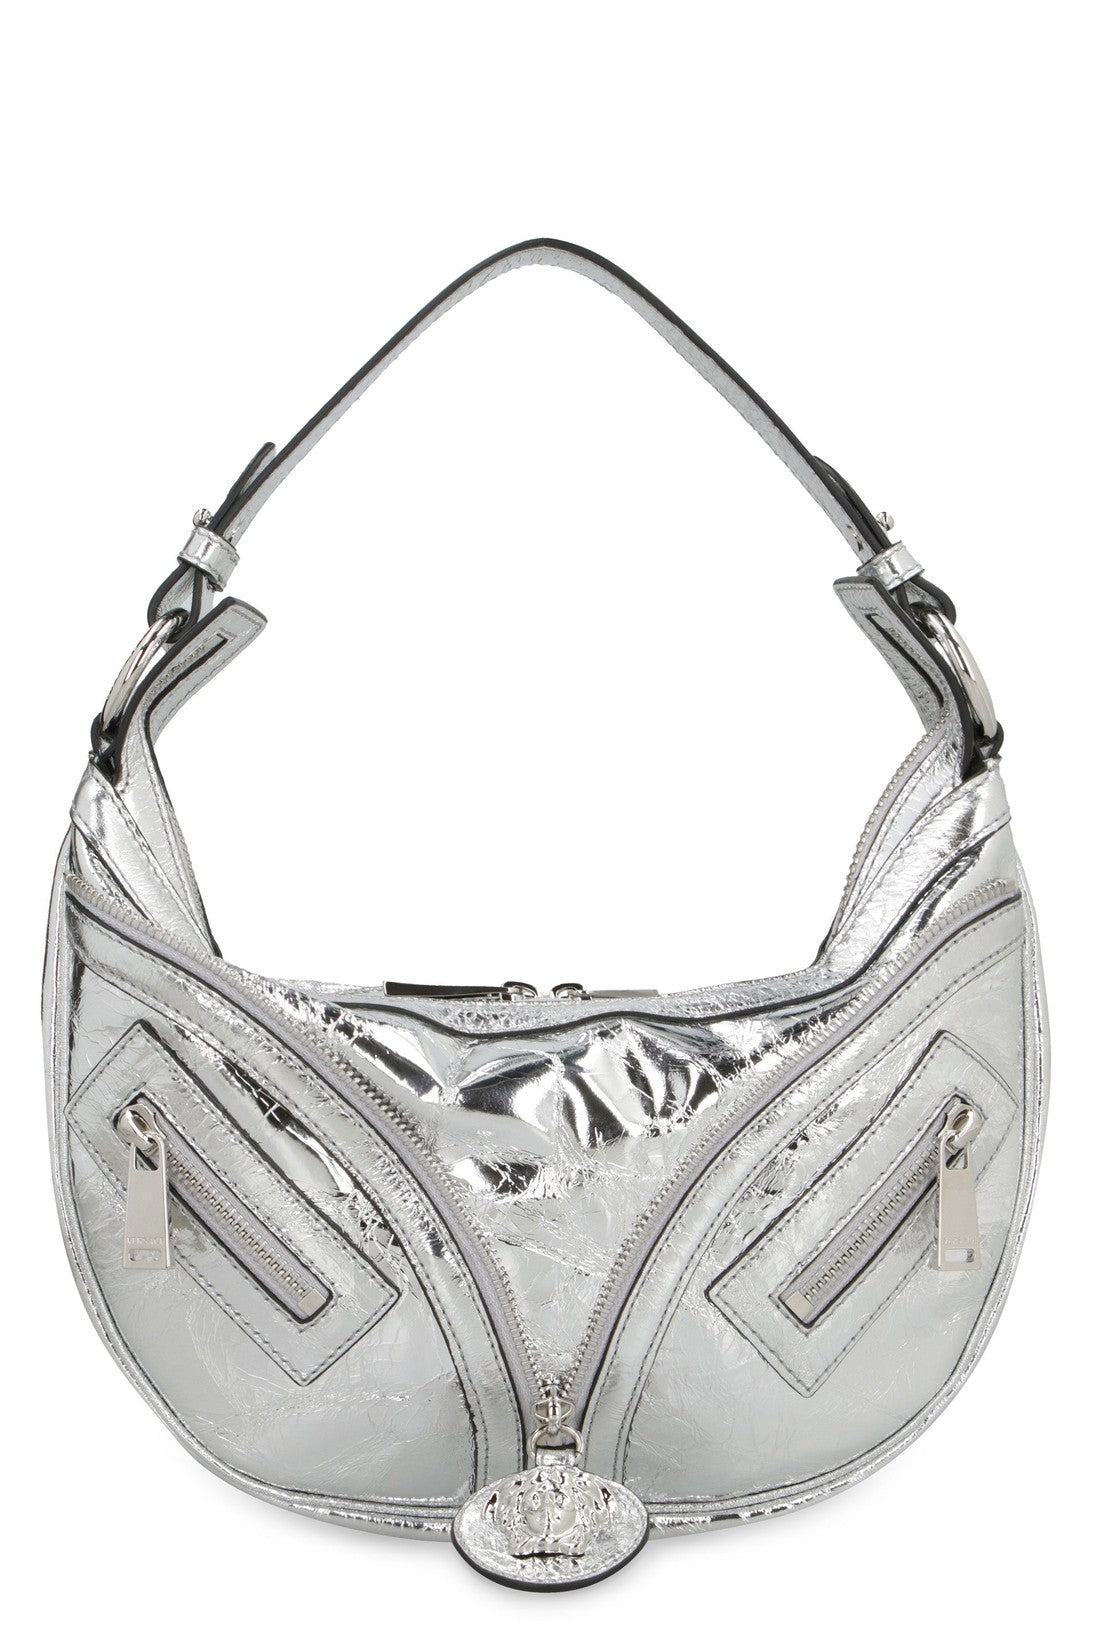 Versace-OUTLET-SALE-Repeat leather shoulder bag-ARCHIVIST